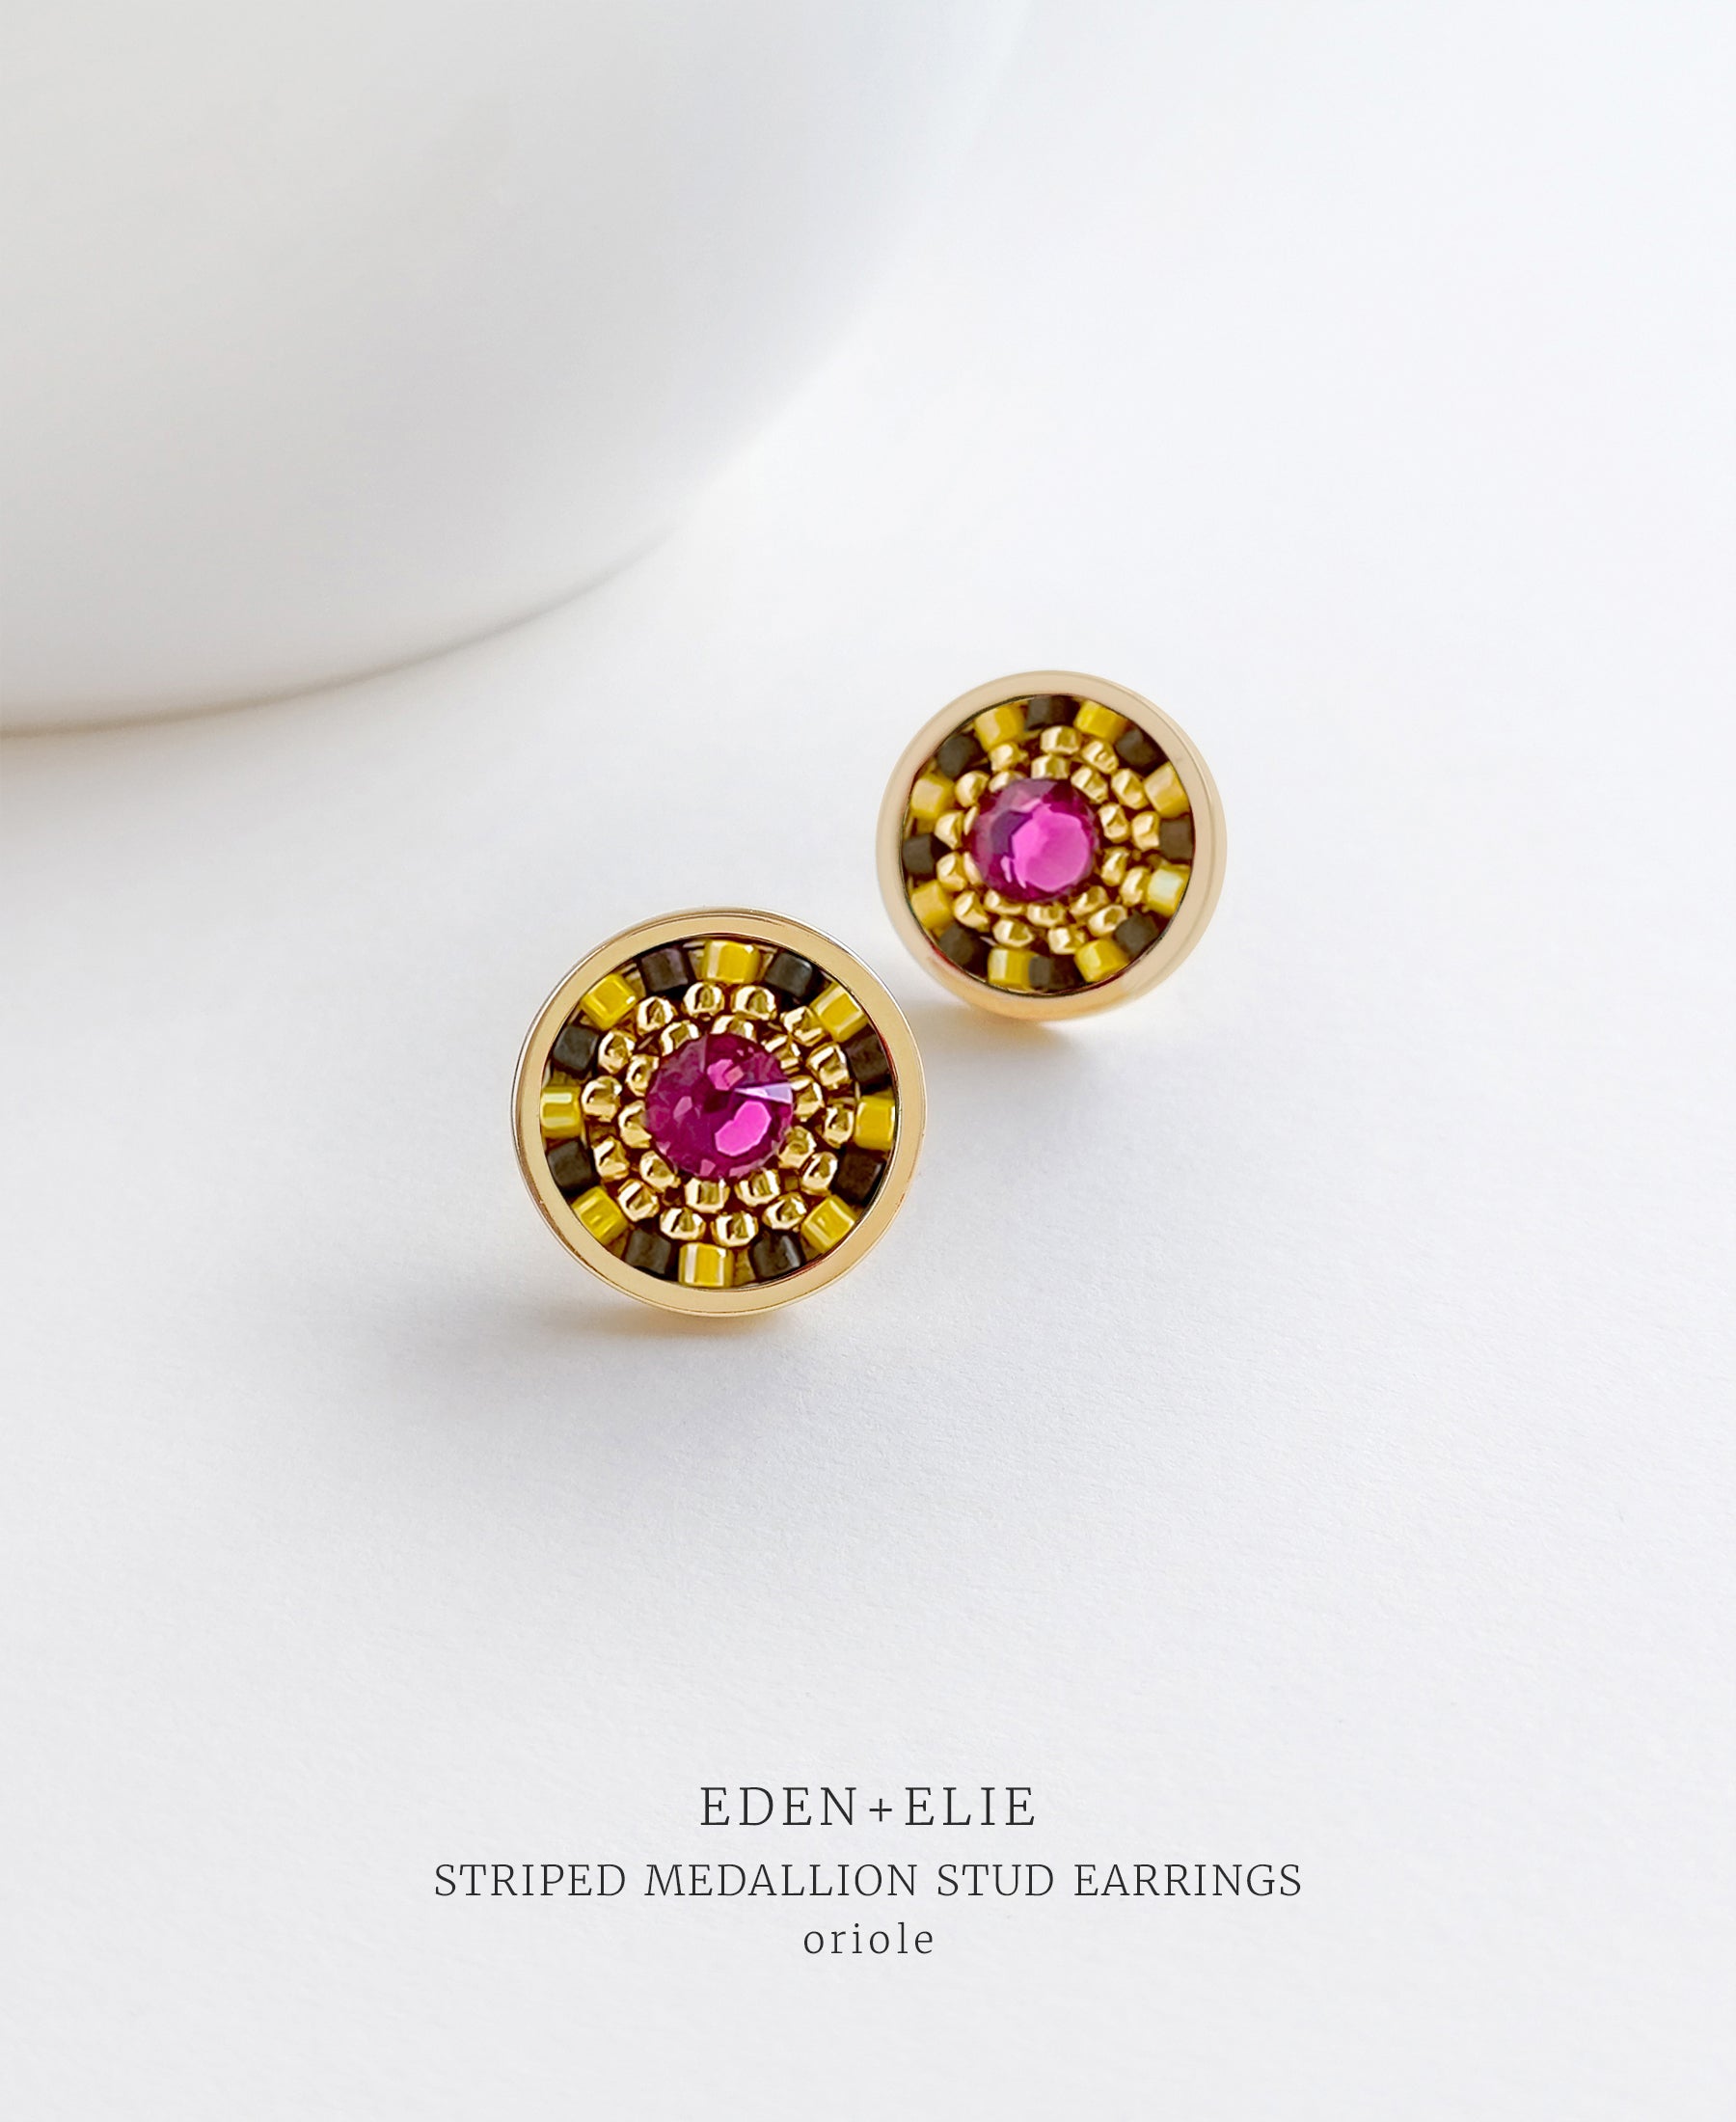 EDEN + ELIE Striped Medallion stud earrings - Oriole